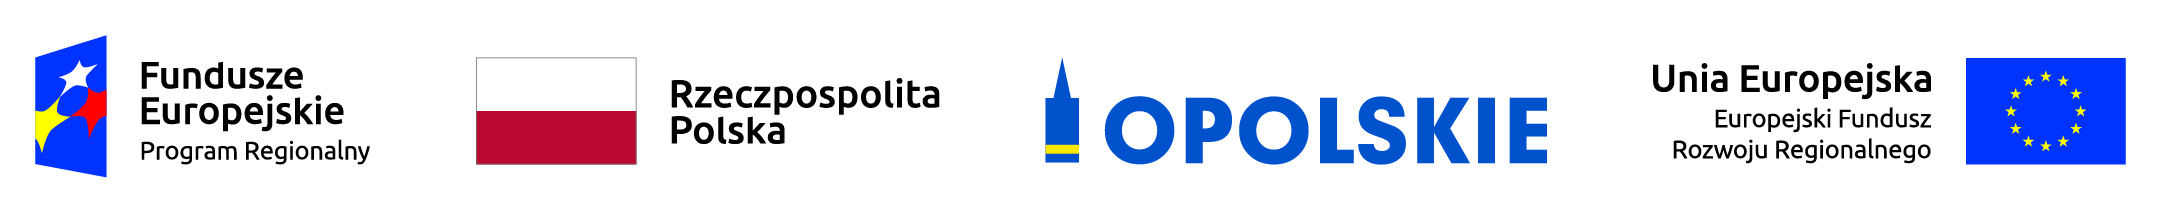 Logotypy, od lewej do prawej: Fundusze Europejskie Program Regionalny, Rzeczpospolita Polska, Opolskie, Unia Europejska Europejski Fundusz Rozwoju Regionalnego